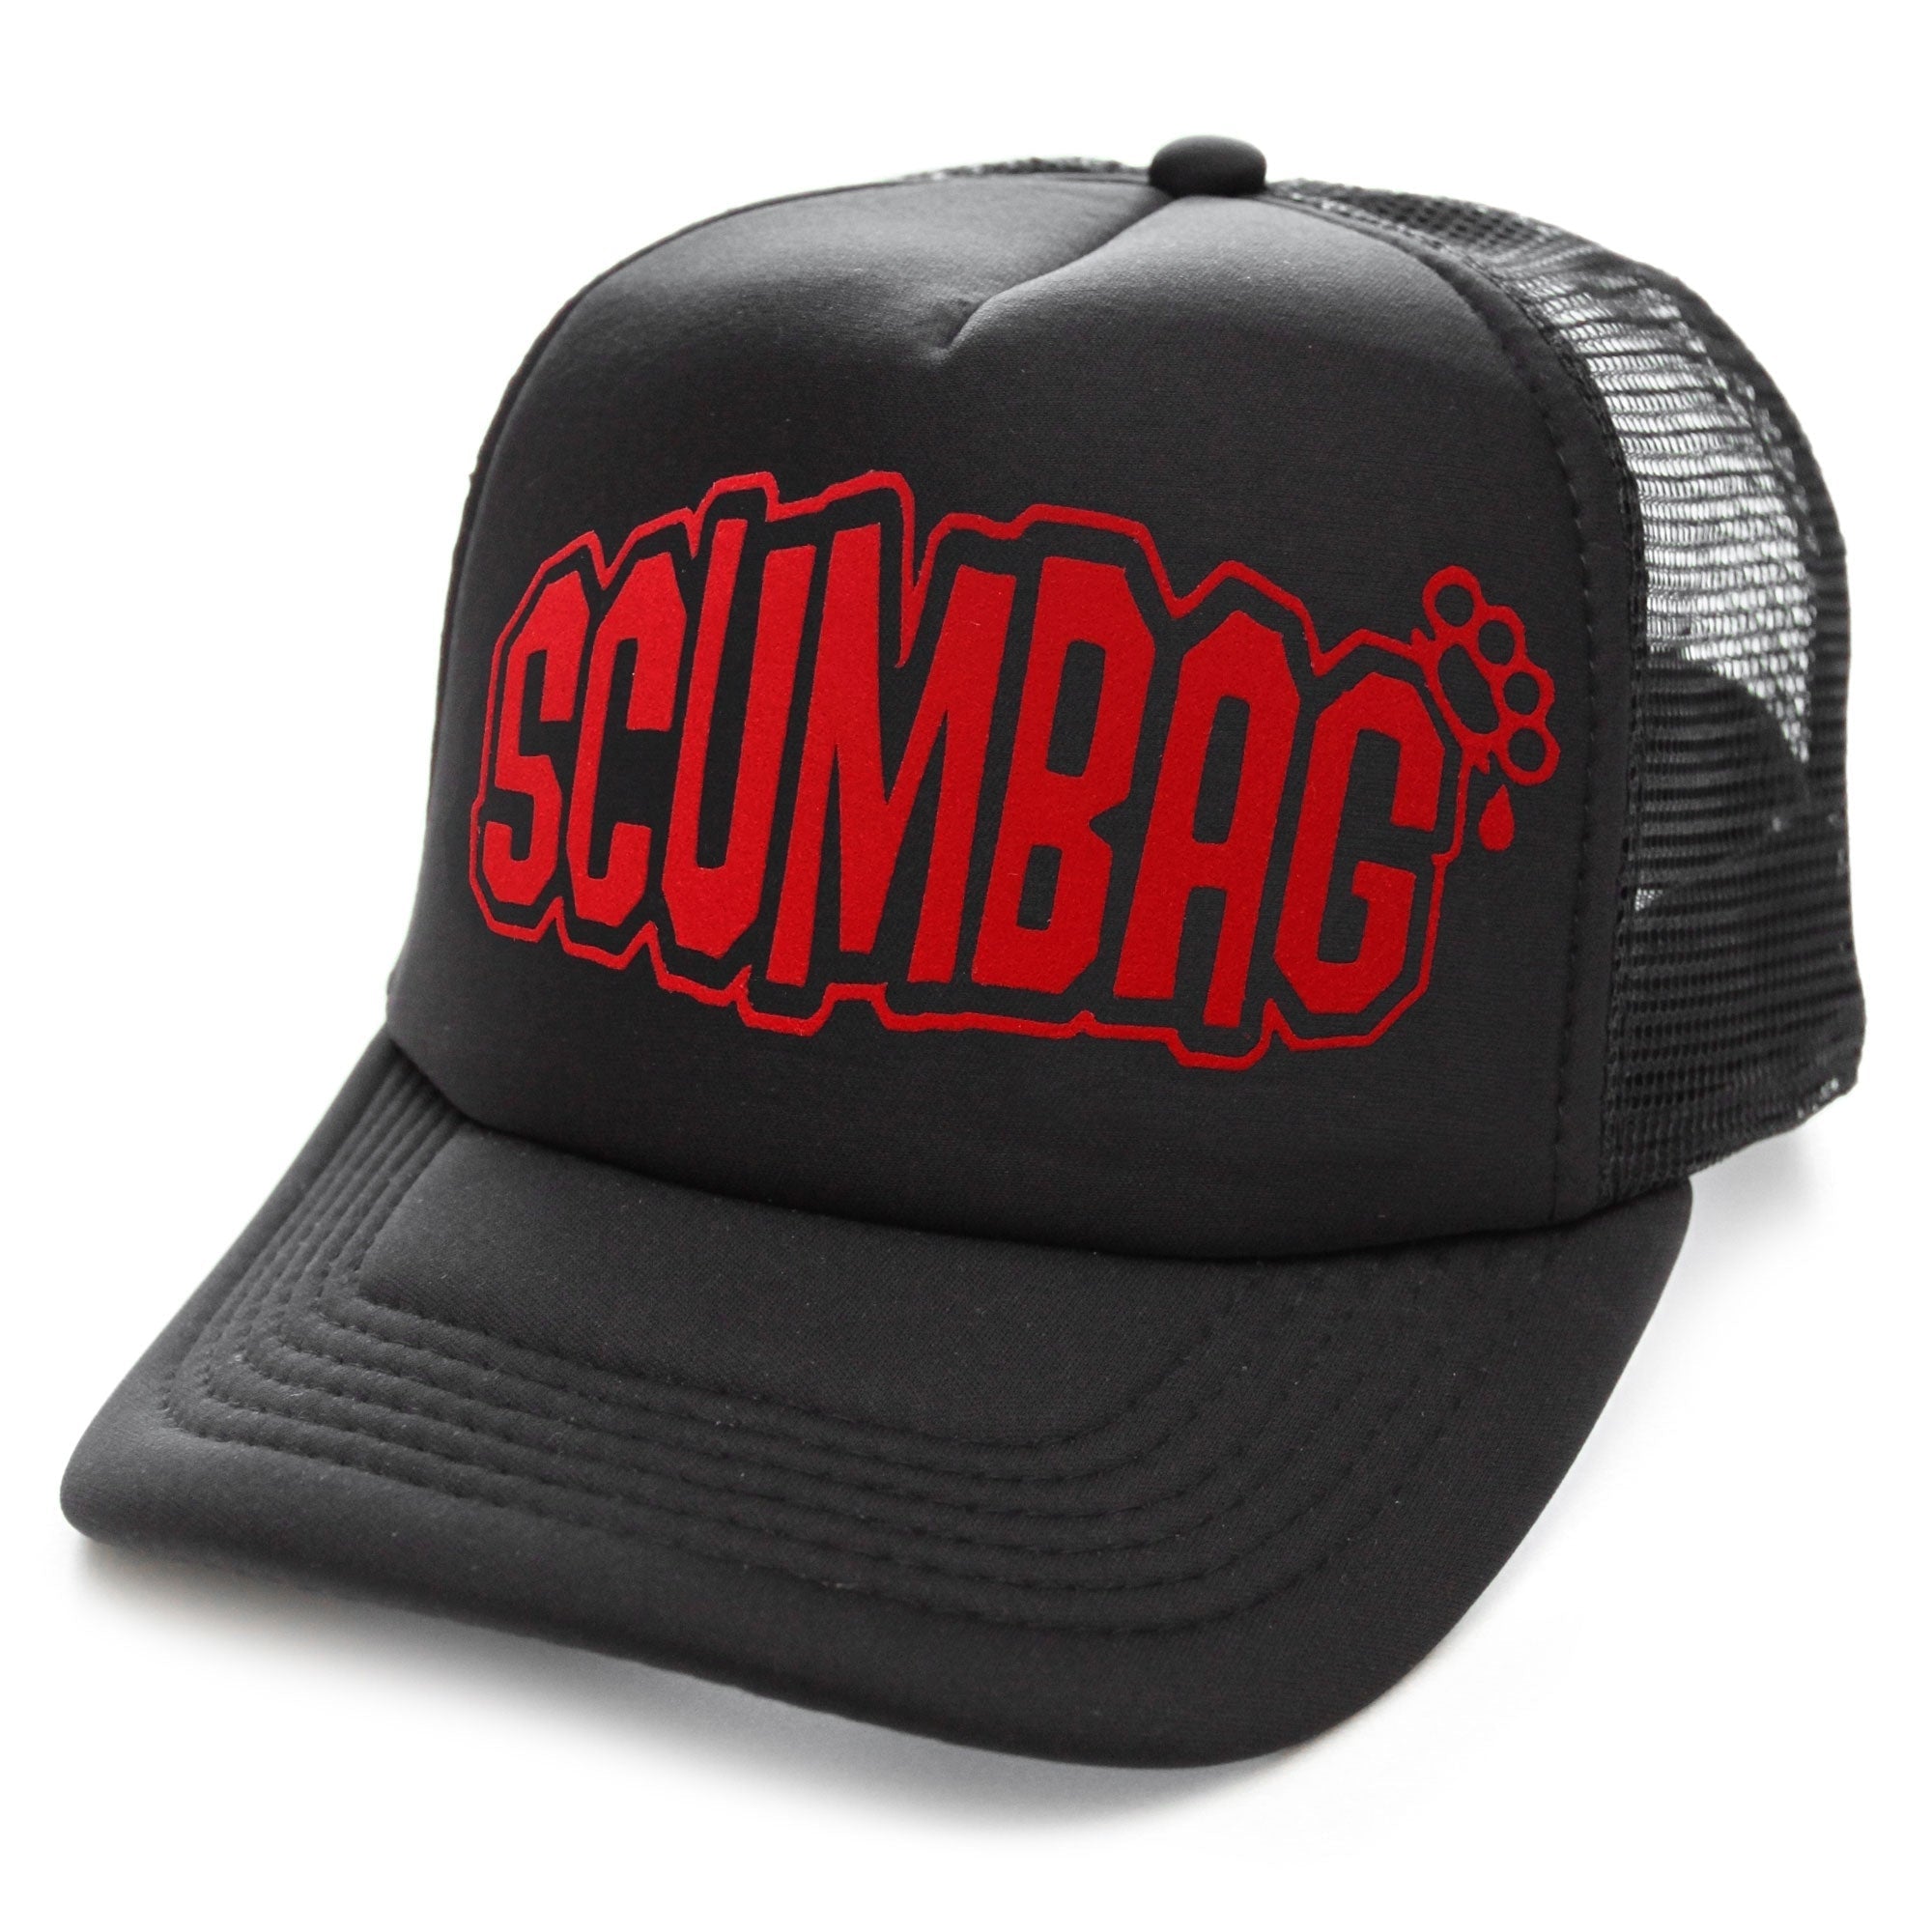 Scumbag Snapback Trucker Cap-Mens Beanies, Hats & Snapback Caps-Scarlett Dawn